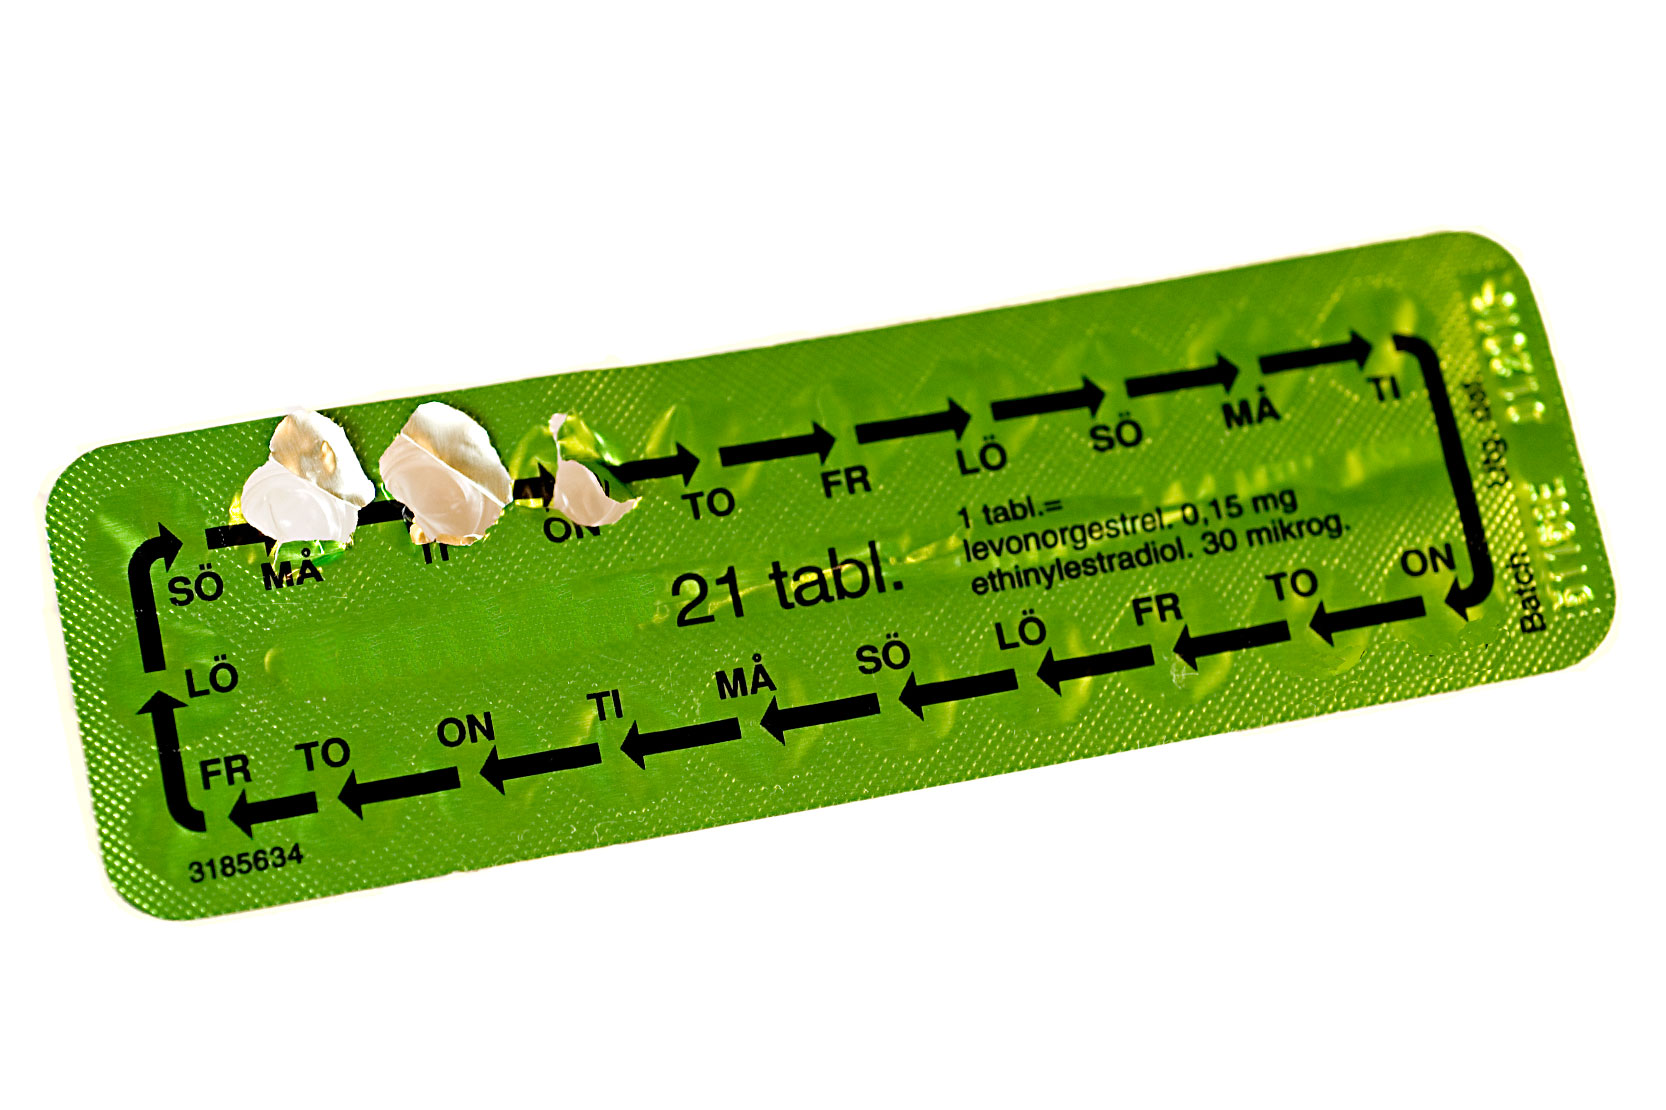 En förpackning med p-piller där veckodagar finns markerade. Fotografi. 